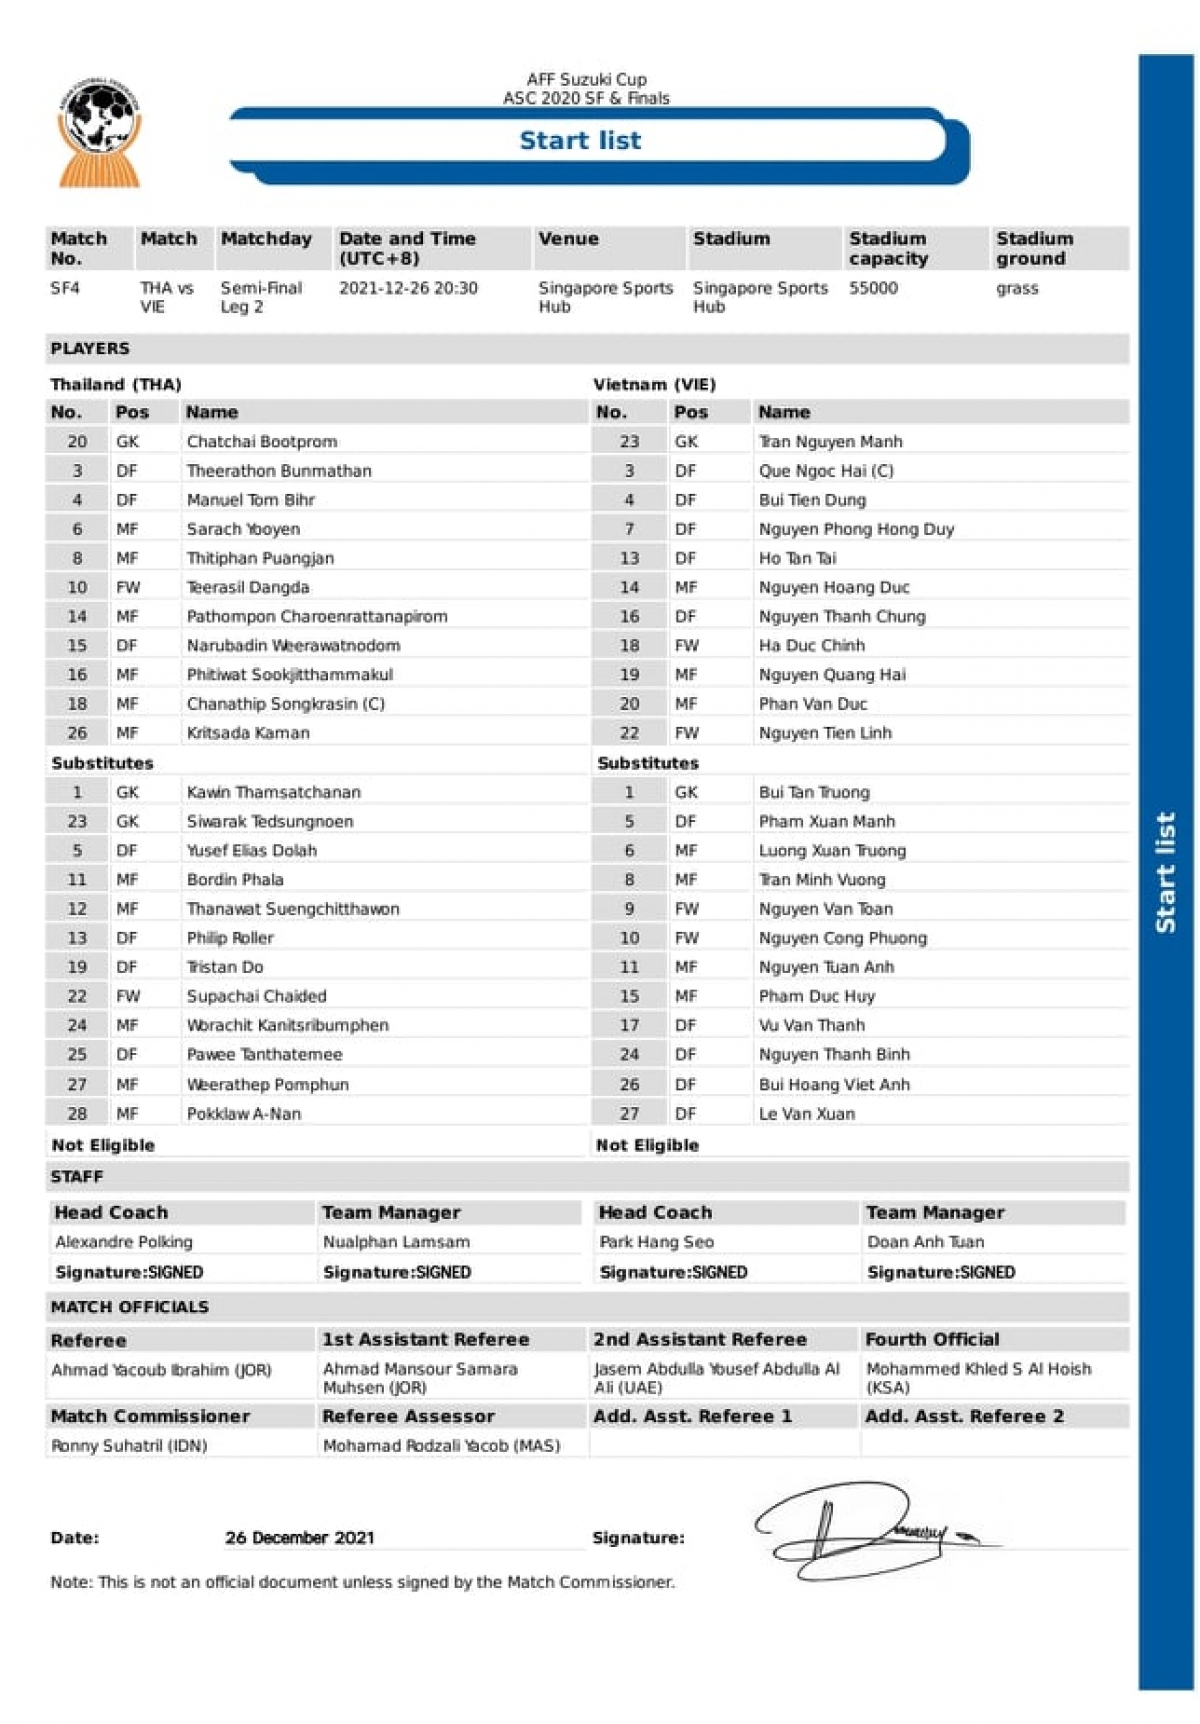 Danh sách đăng kí thi đấu của tuyển Việt Nam và Thái Lan ở bán kết lượt về AFF Cup 2020